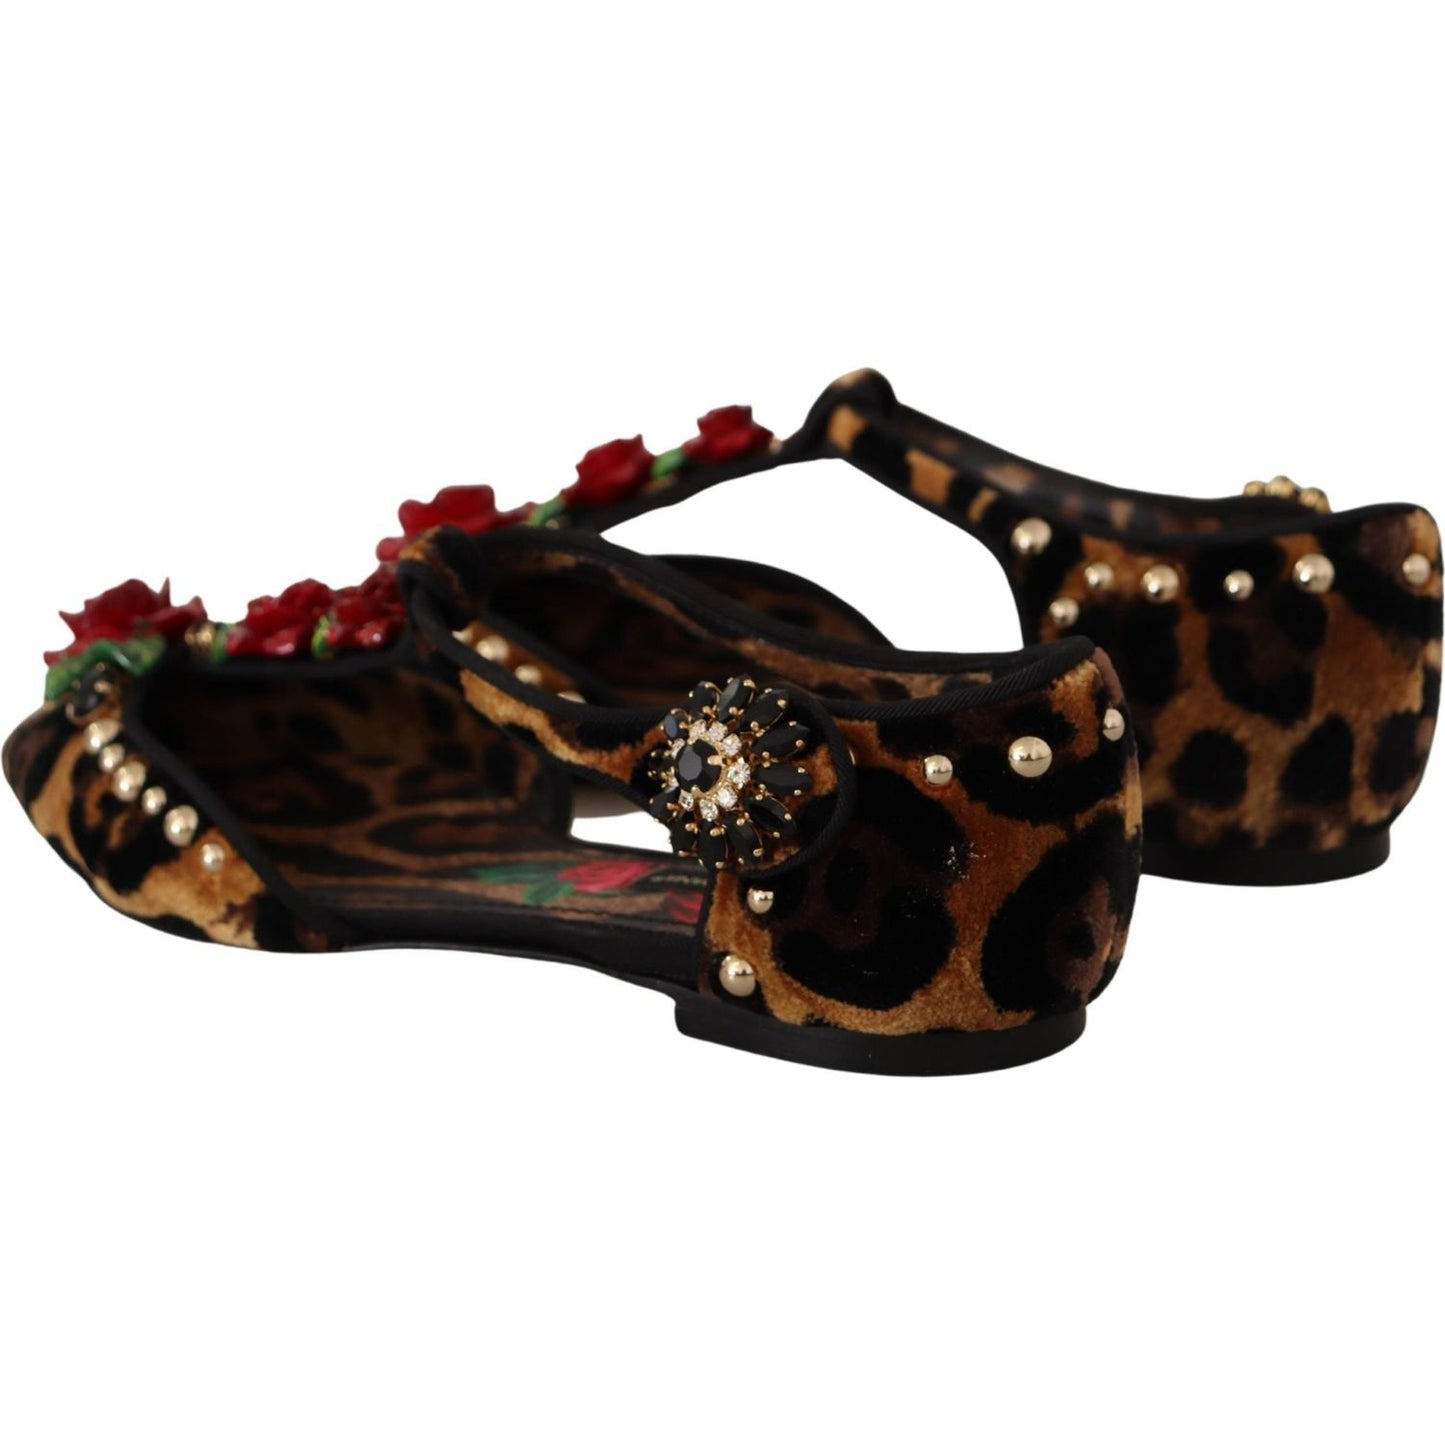 Dolce & Gabbana Floral Embellished Leopard T-Strap Sandals brown-ballerina-embellished-leopard-print-shoes